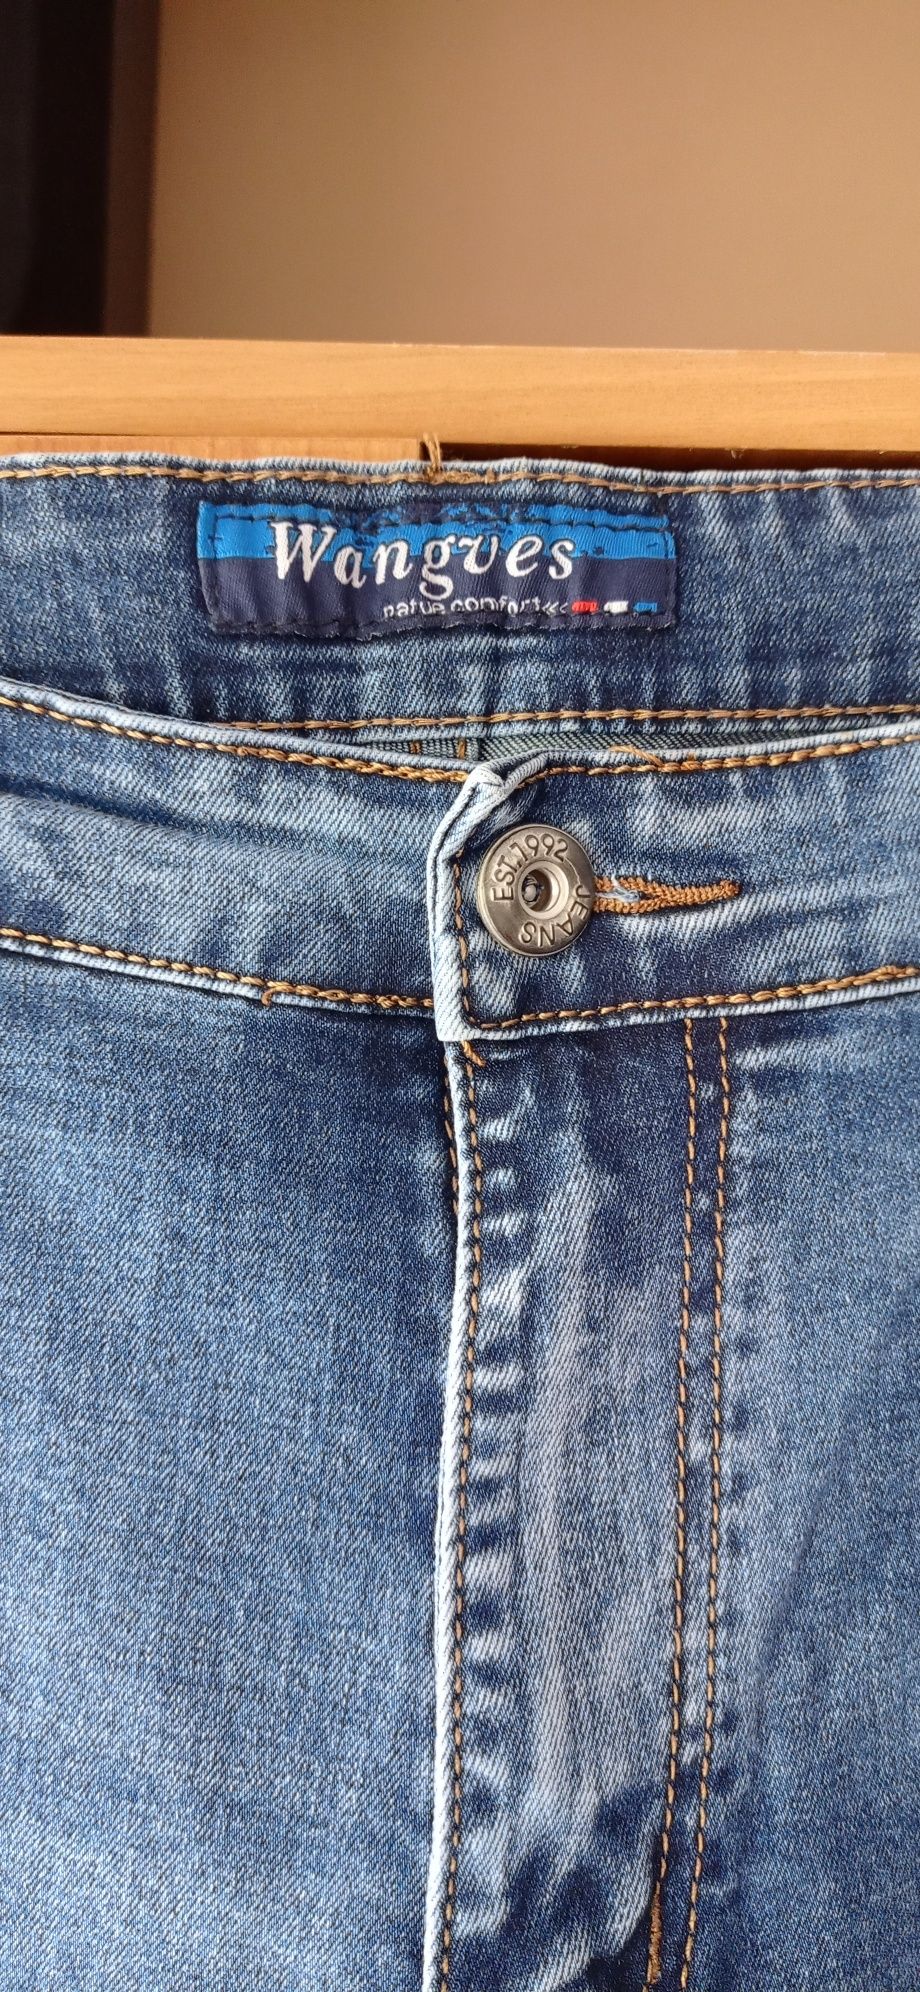 Spodnie Jeans Męskie W 37 L 32 Obwód w pasie 94cm